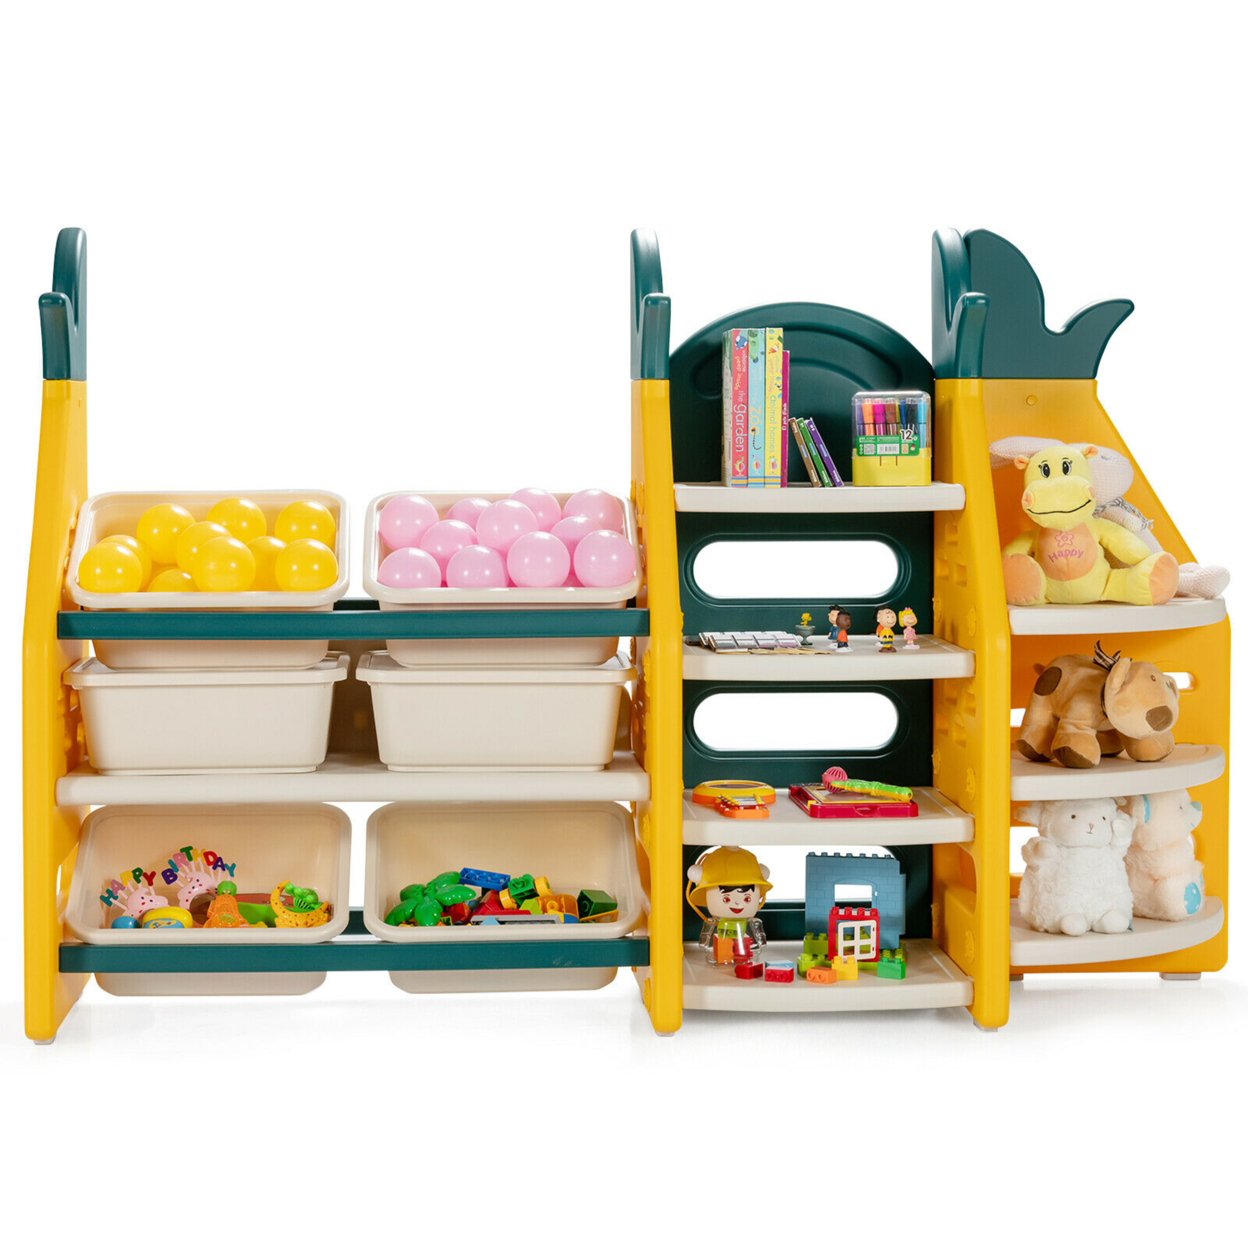 3-in-1 Kids Toy Storage Organizer Bookshelf Corner Rack W/ Plastic Bins